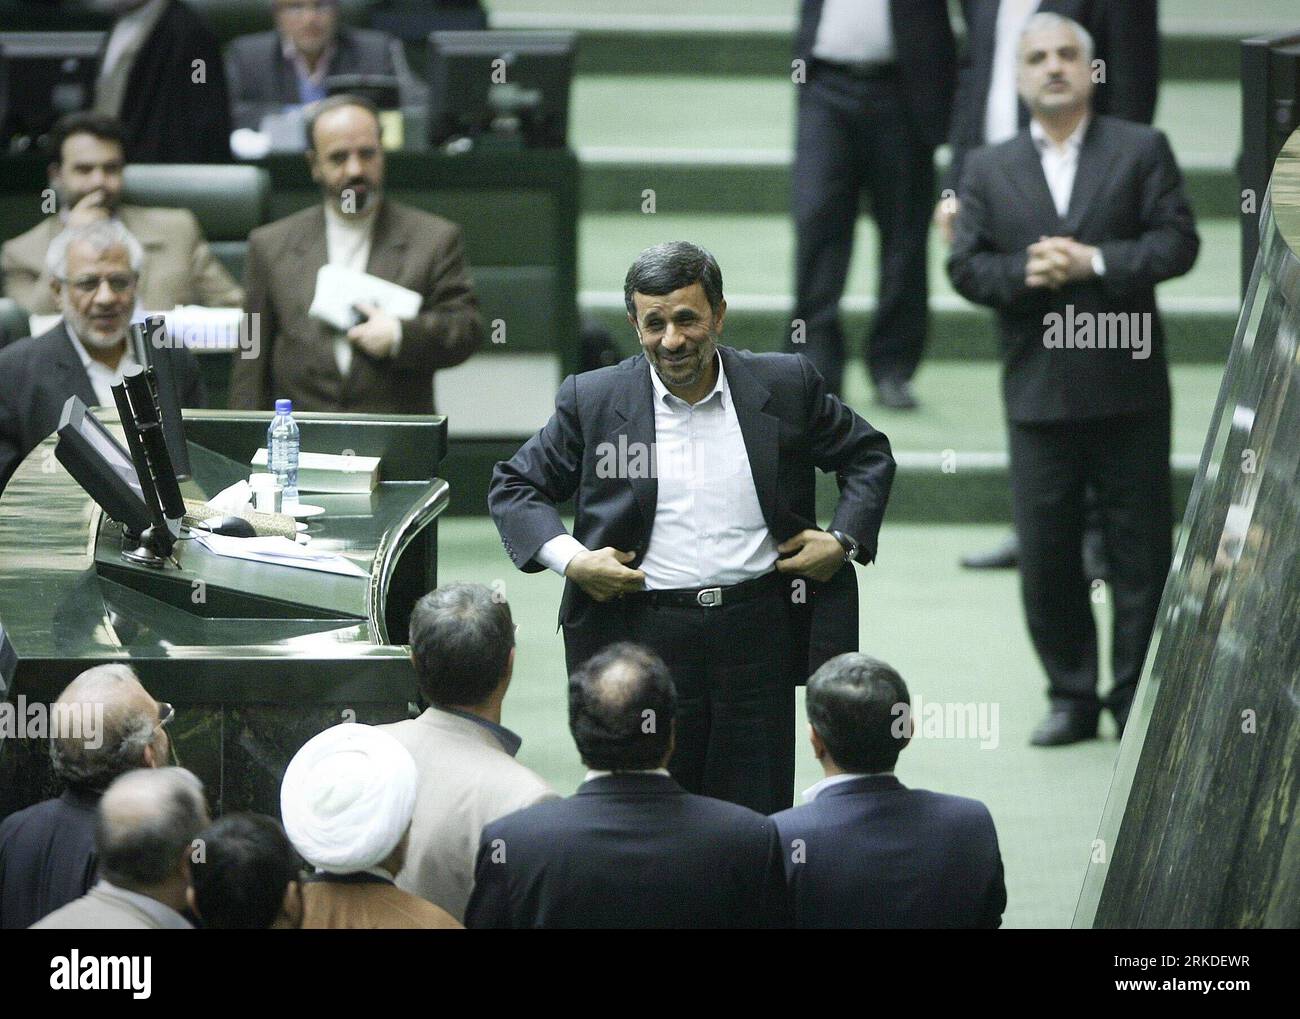 Bildnummer: 54930489  Datum: 20.02.2011  Copyright: imago/Xinhua (110220) -- TEHRAN, Feb. 20, 2011 (Xinhua) -- Iranian President Mahmoud Ahmadinejad talks with lawmakers in the Majlis (Parliament) in Tehran, Iran, Feb. 20, 2011. Ahmadinejad submitted a 1,769-trillion-rial (nearly 180 billion dollars) budget bill for the upcoming fiscal year to the Parliament on sunday.(Xinhua/Ahmad Halabisaz)(zl) IRAN-TEHERAN-AHMADINEJAD-BUDGET BILL PUBLICATIONxNOTxINxCHN People Politik kbdig xkg 2011 quer premiumd     Bildnummer 54930489 Date 20 02 2011 Copyright Imago XINHUA  TEHRAN Feb 20 2011 XINHUA Irania Stock Photo